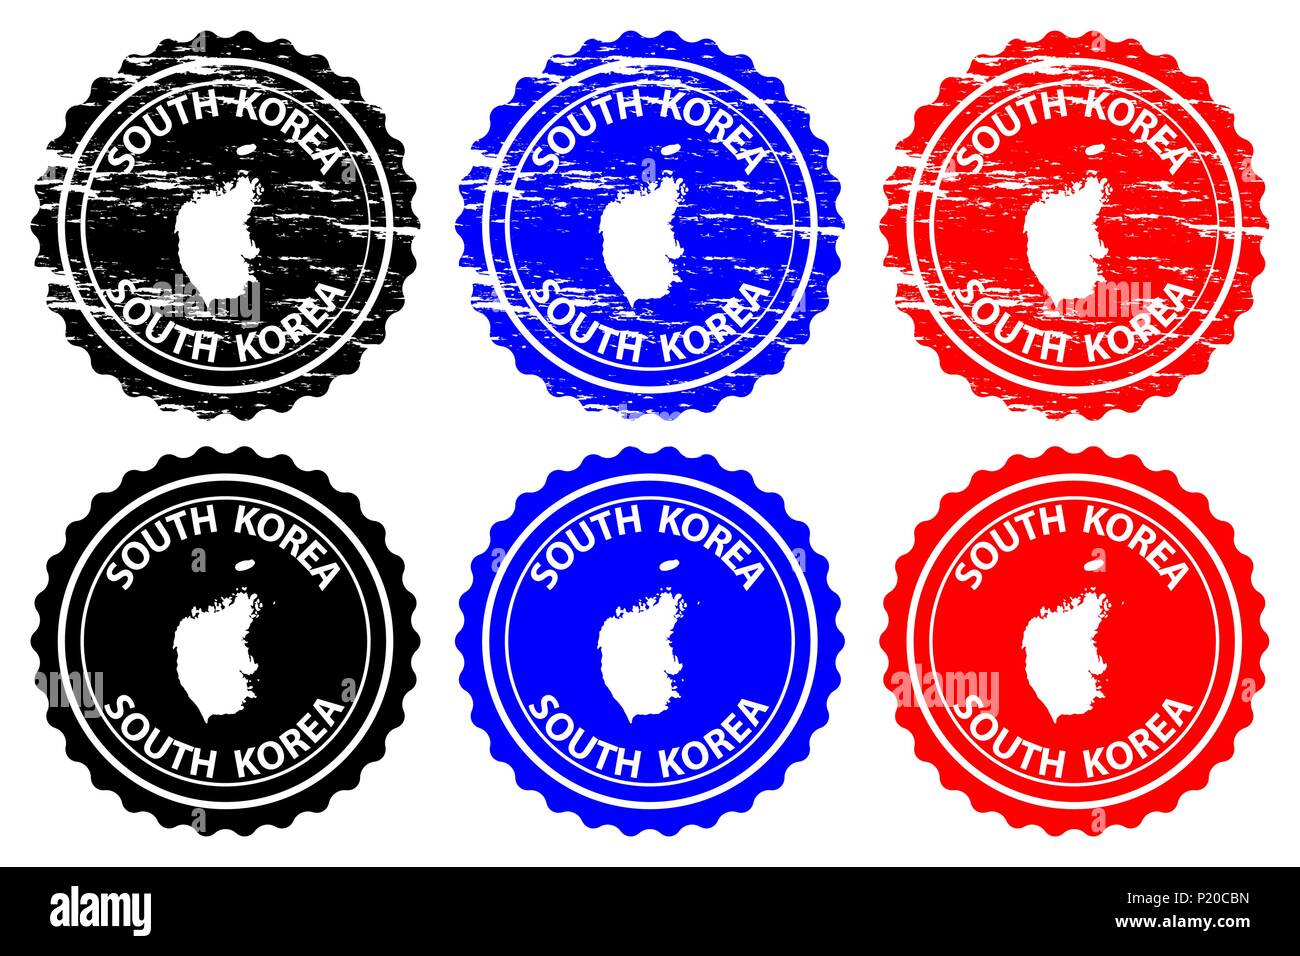 Corée du Sud - timbres en caoutchouc - vecteur, République de Corée - sticker carte - noir, bleu et rouge Illustration de Vecteur